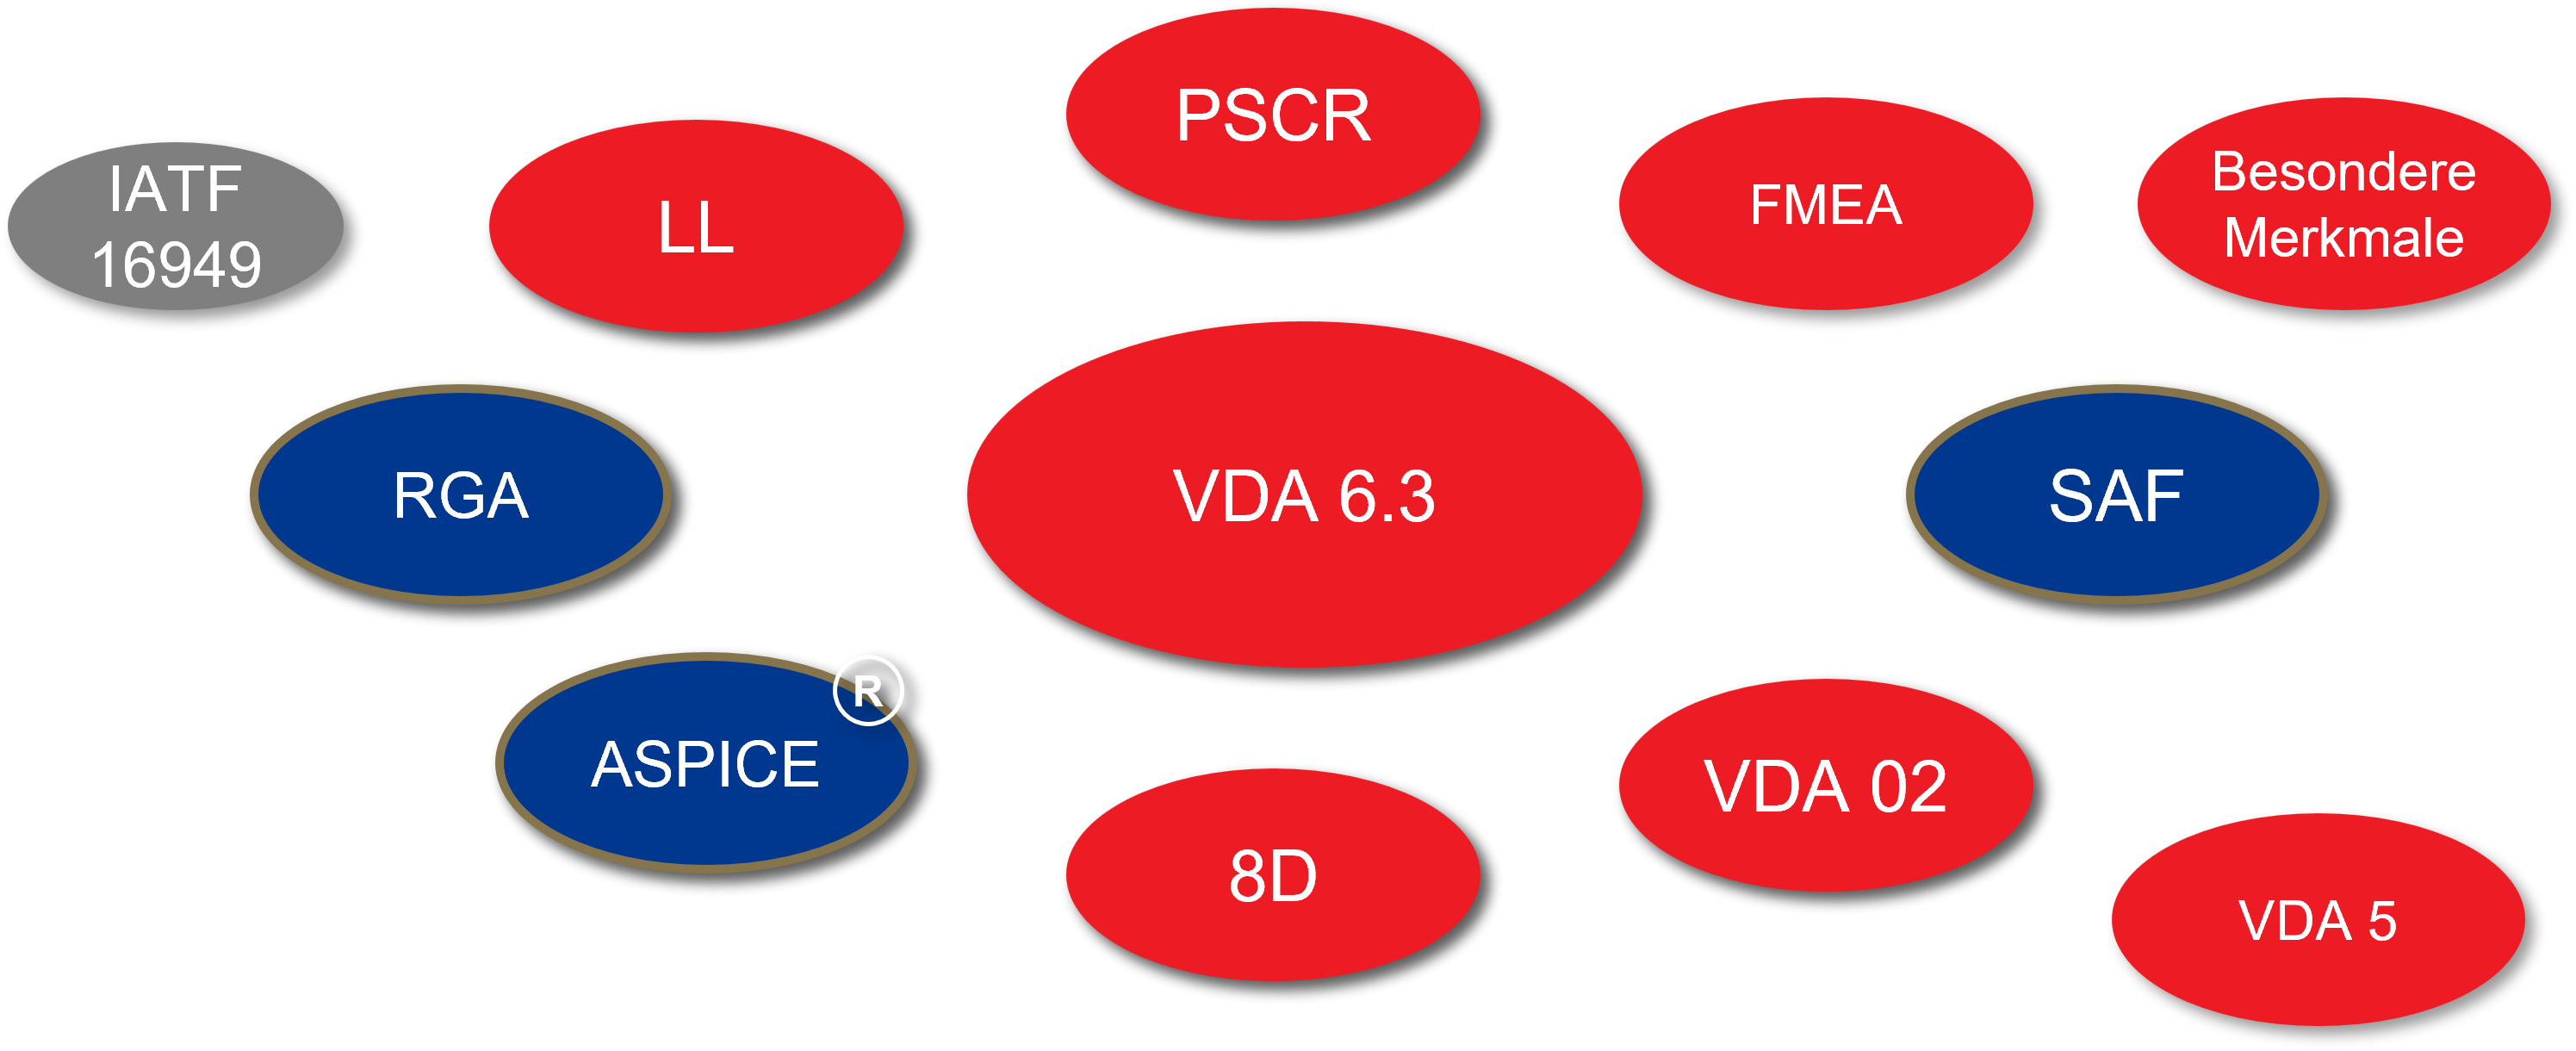 Die Grafik zeigt die wesentlichen VDA-Standards, die durch das Prozessaudit VDA 6.3 als Input abgeglichen werden.
Der Auditor benötigt zur Durchführung eines VDA 6.3 Prozessaudit, je nach dem Grad seiner Ausbildung Grundkenntnisse bis hin zu fundierten Kenntnissen dieser VDA-Standards.
Aus diesem Grund wird bei der Zulassung zum zertifizierten VDA 6.3 Prozessauditor der Kompetenznachweise zu den Core Tools gefordert. Dieser Nachweis kann durch erfolgreiche Teilnahme an der 2-tägigen VDA Core Tools Schulung oder durch Bestehen des VDA Online Core Tools Quiz erbracht werden.